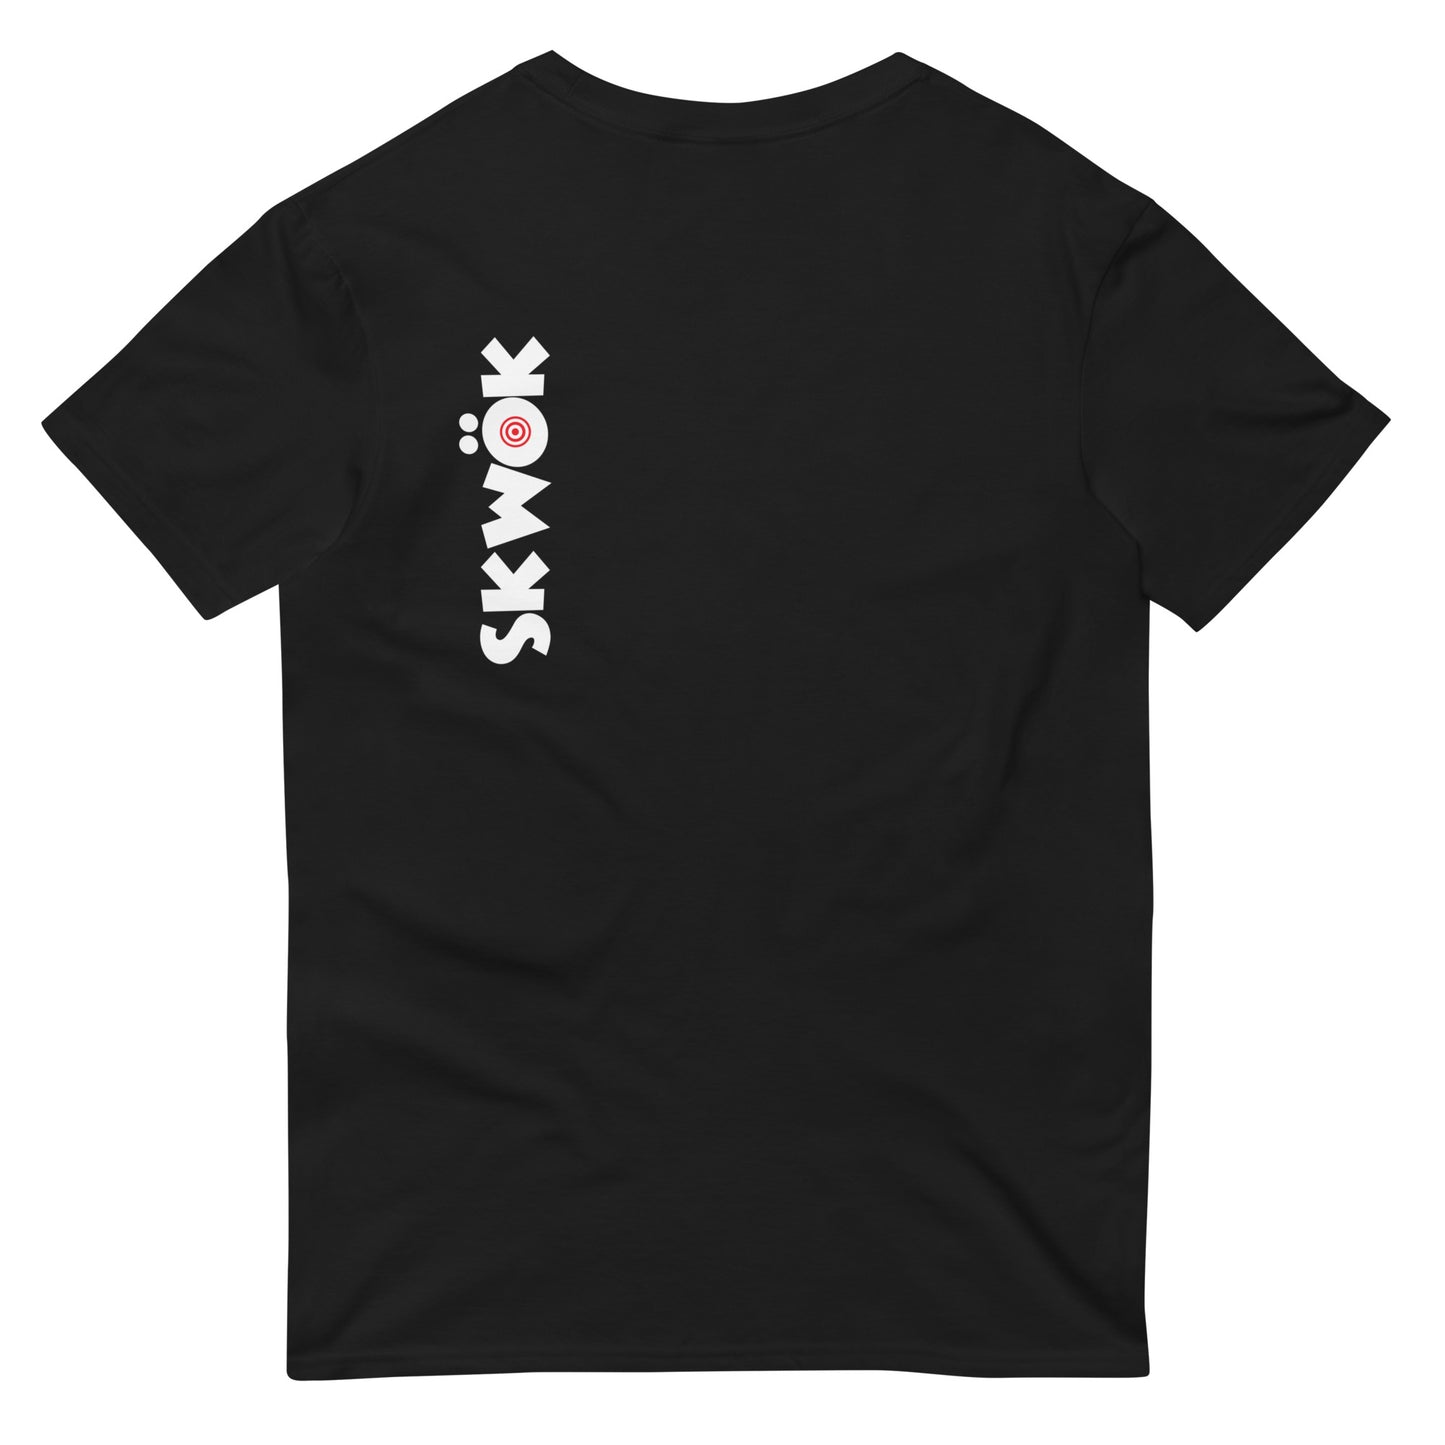 Skwok Brand / T-shirt / Target Logo